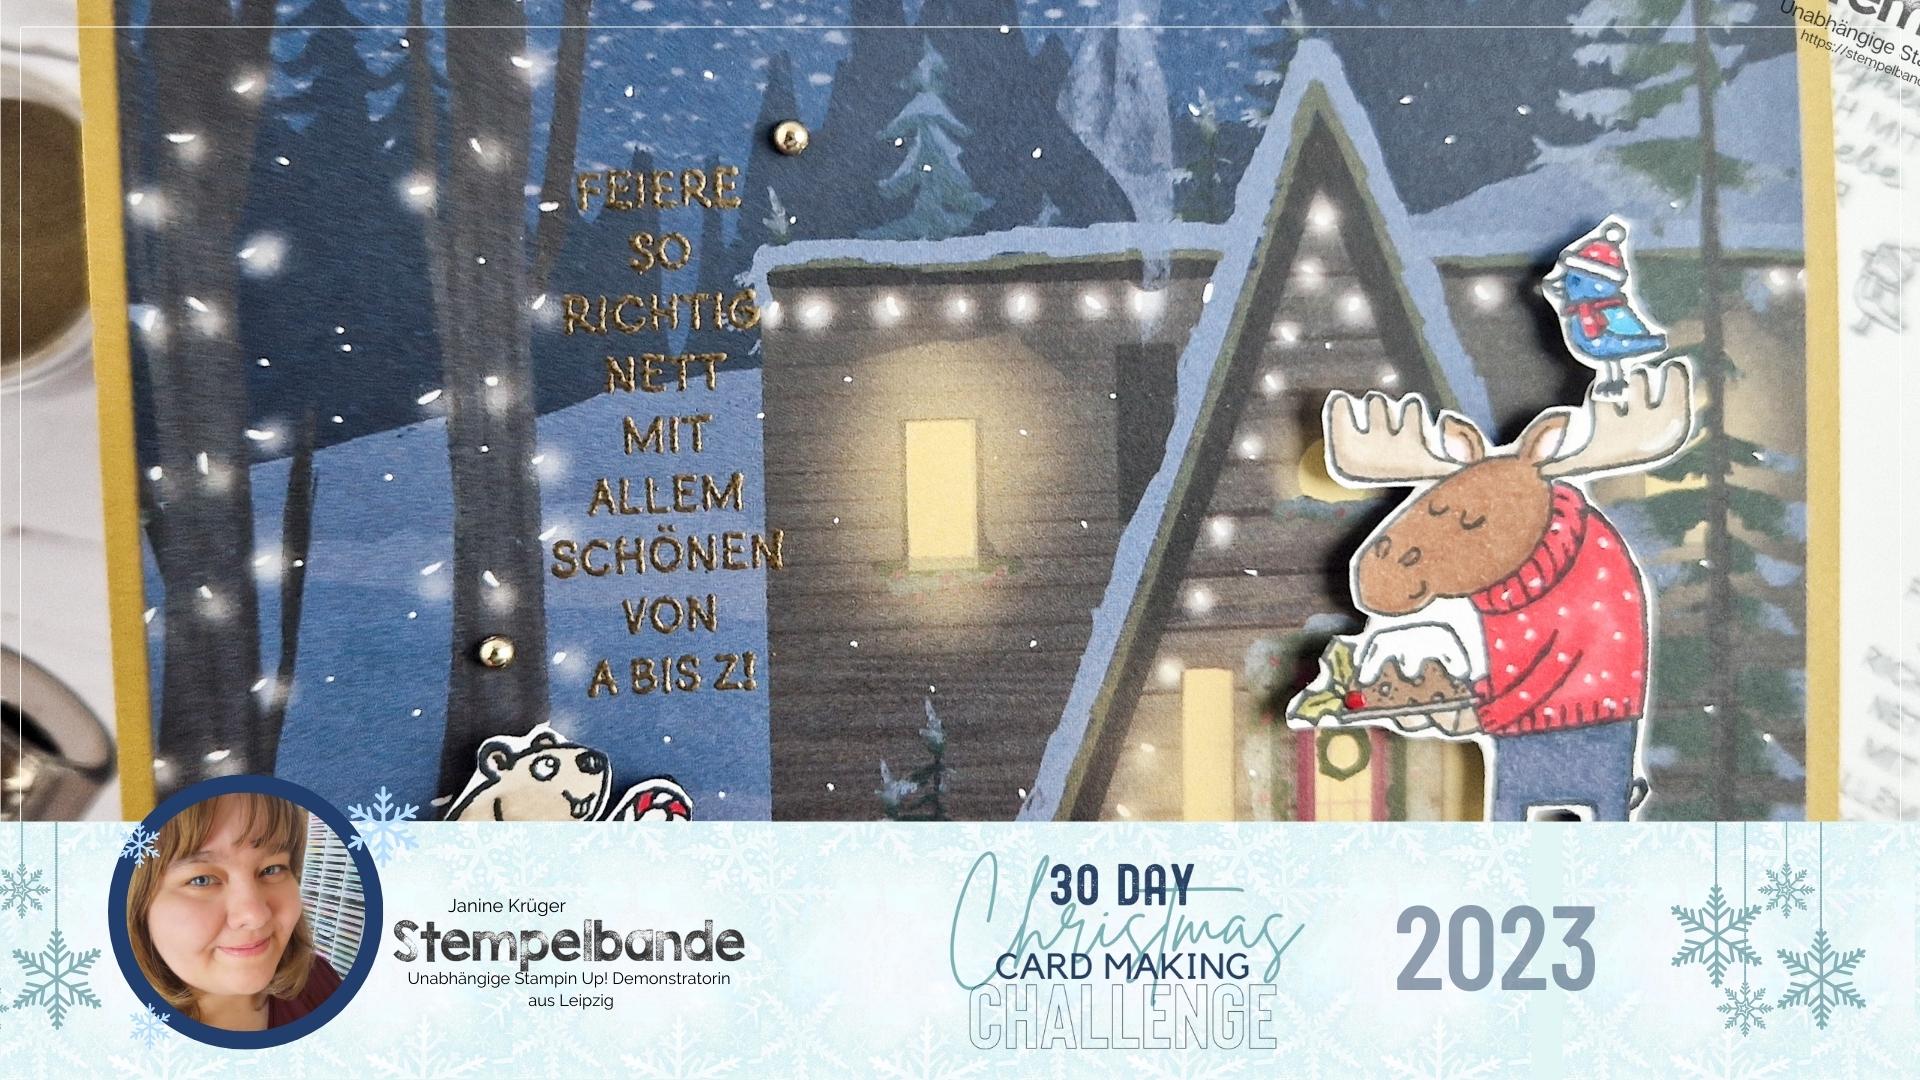 30 Day Christmas Card Making Challenge 2023: Tag 1 SHINING BRIGHT mit dem Stempelset Heitere Weihnachten